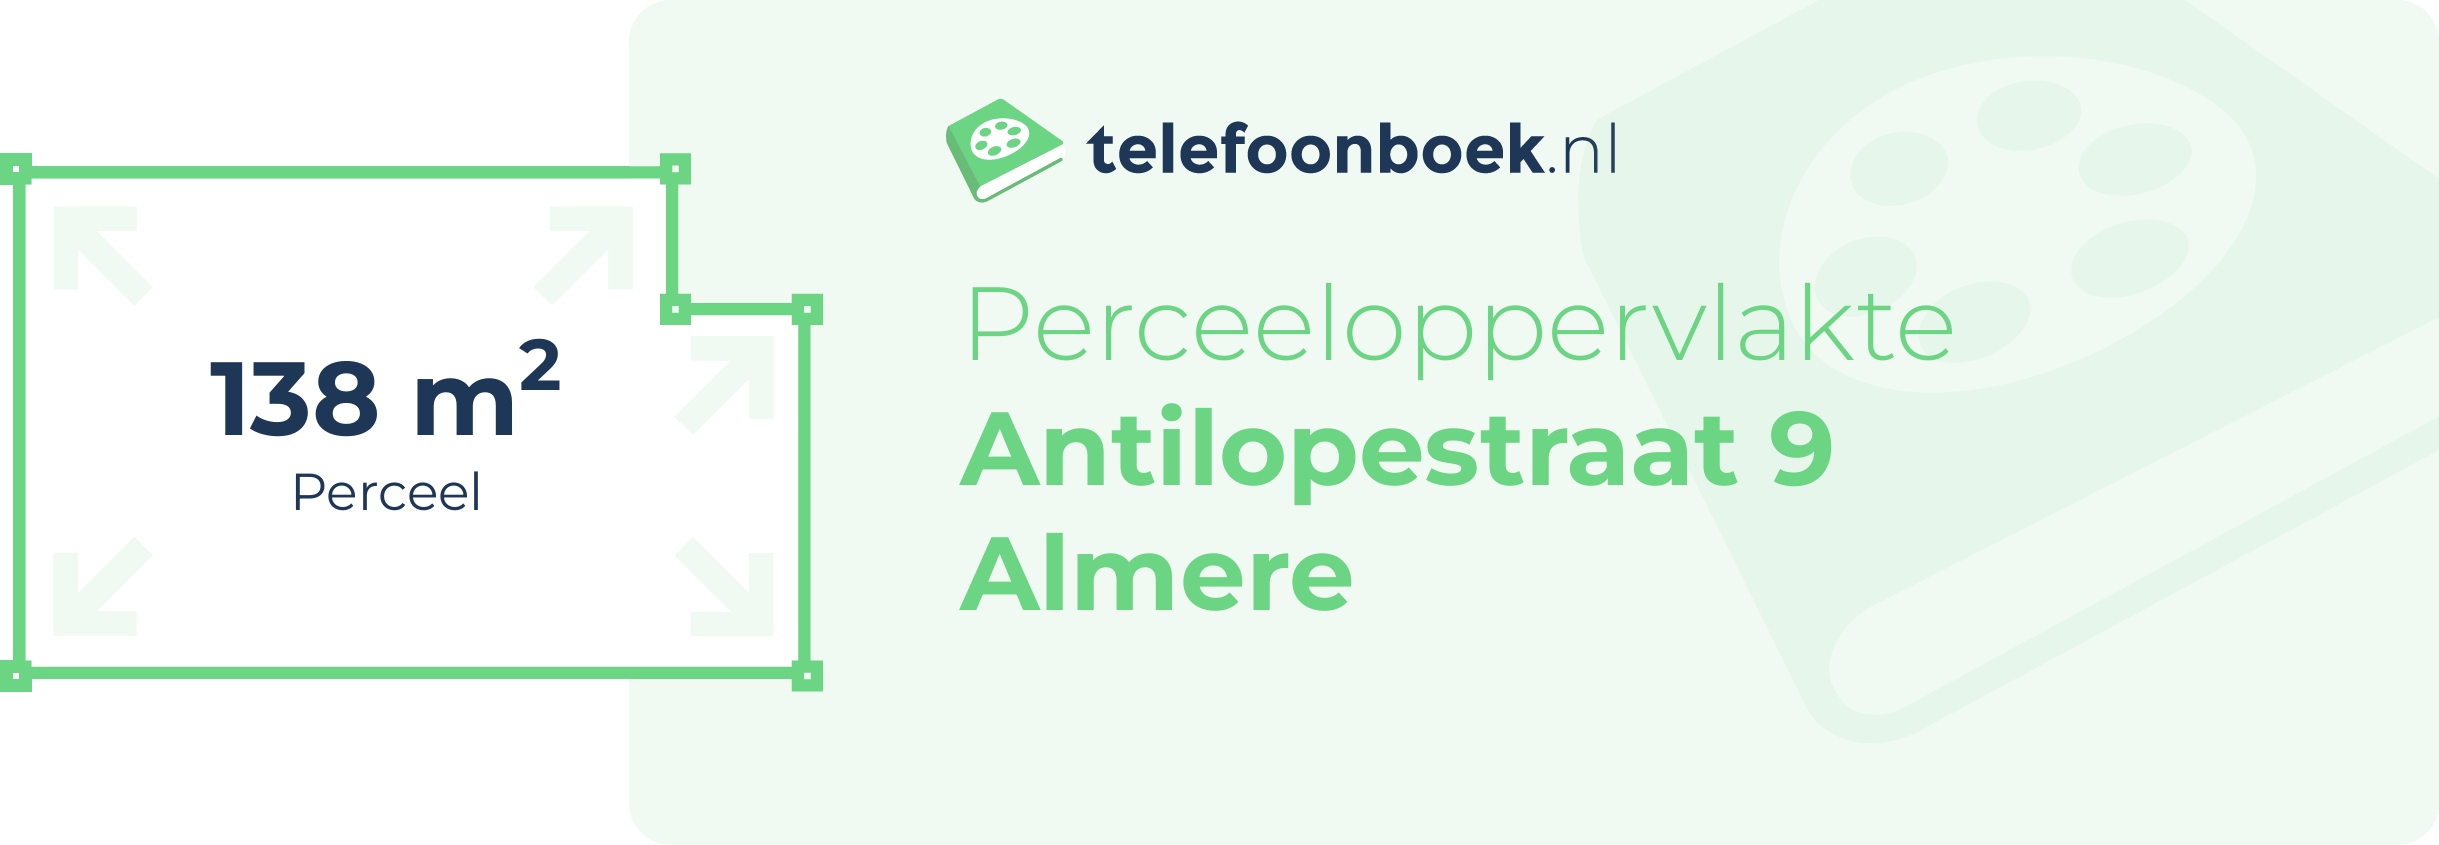 Perceeloppervlakte Antilopestraat 9 Almere